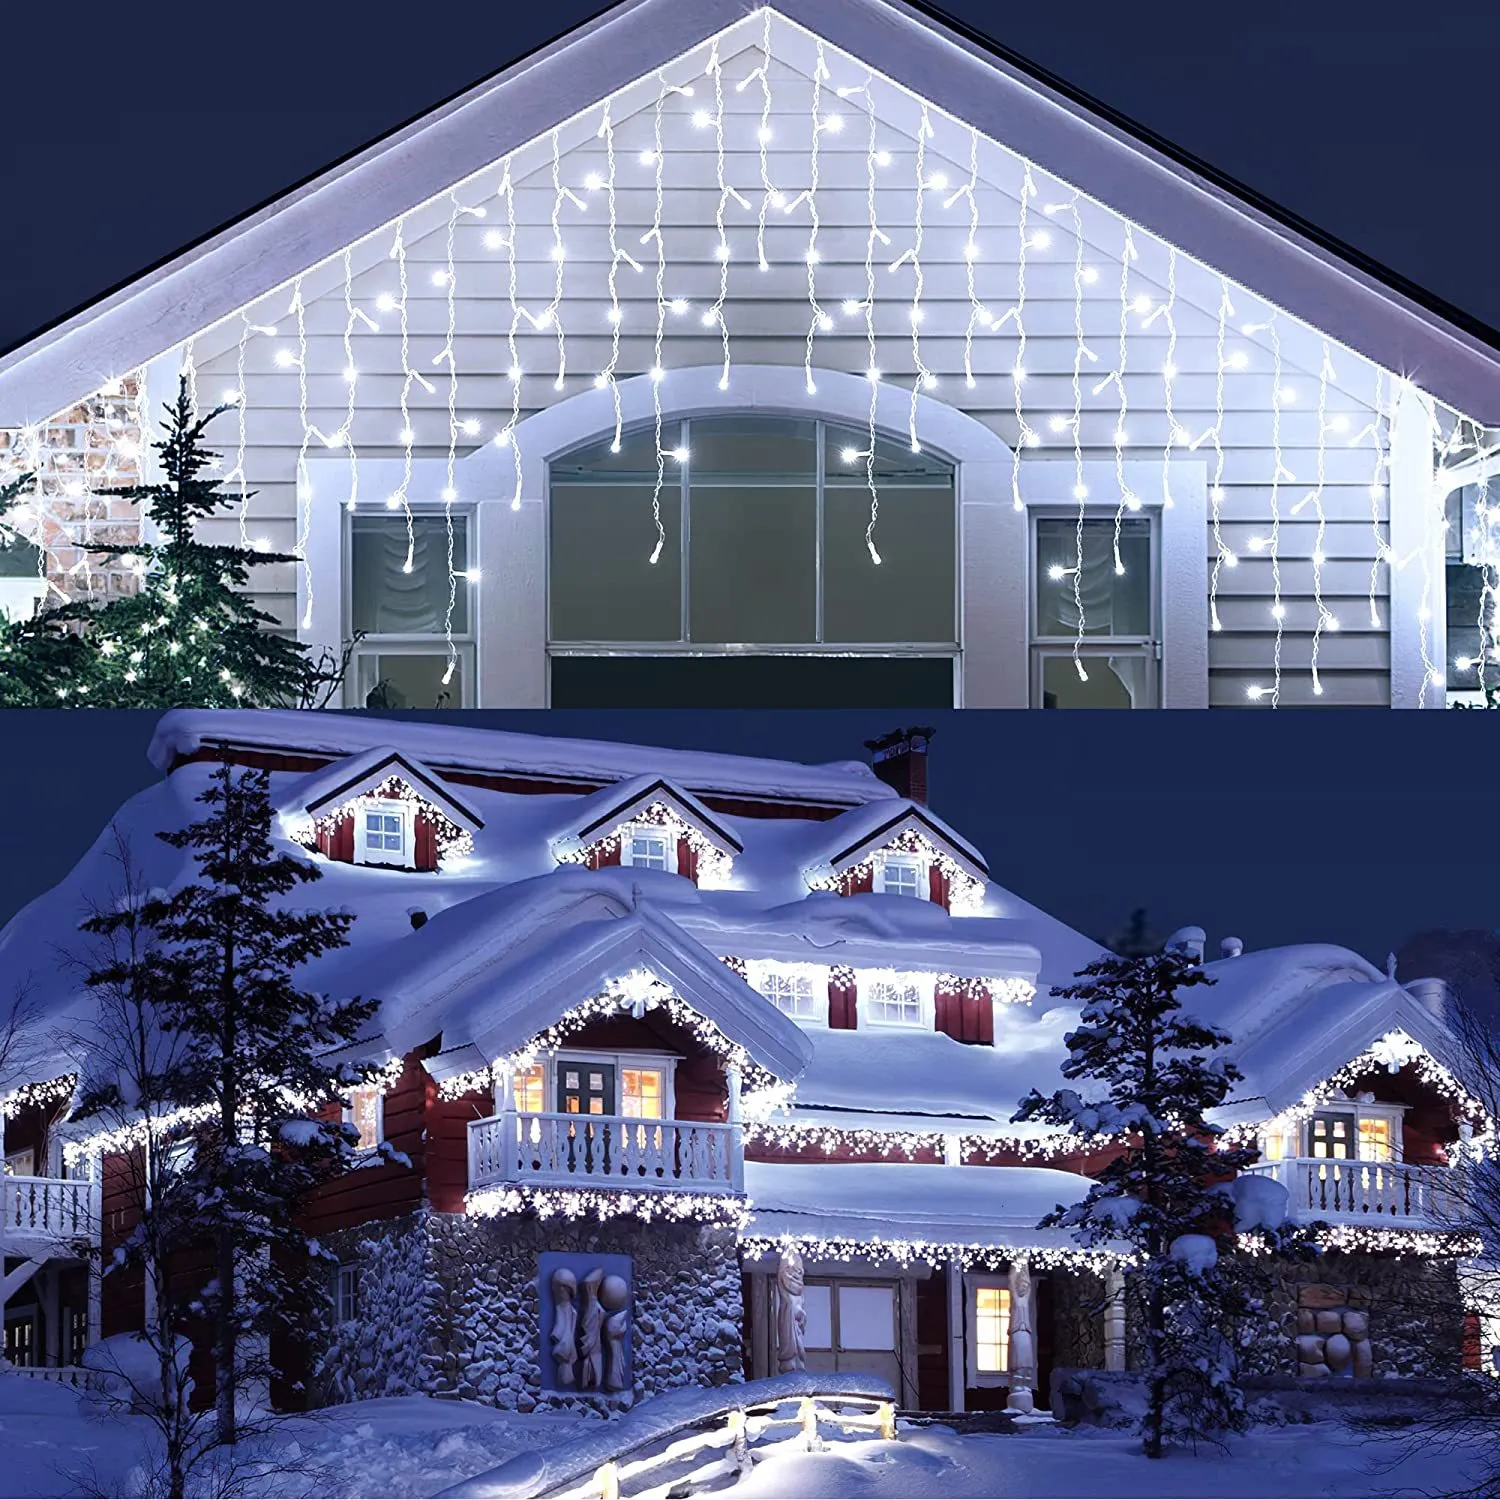 Jul LED Strings Lights Outdoor 34.8ft 480 lysdioder 8 lägen som hänger belysning Xmas -lampor 96 droppar ljus inomhus vattentät för bröllop semesterfest dekorationer